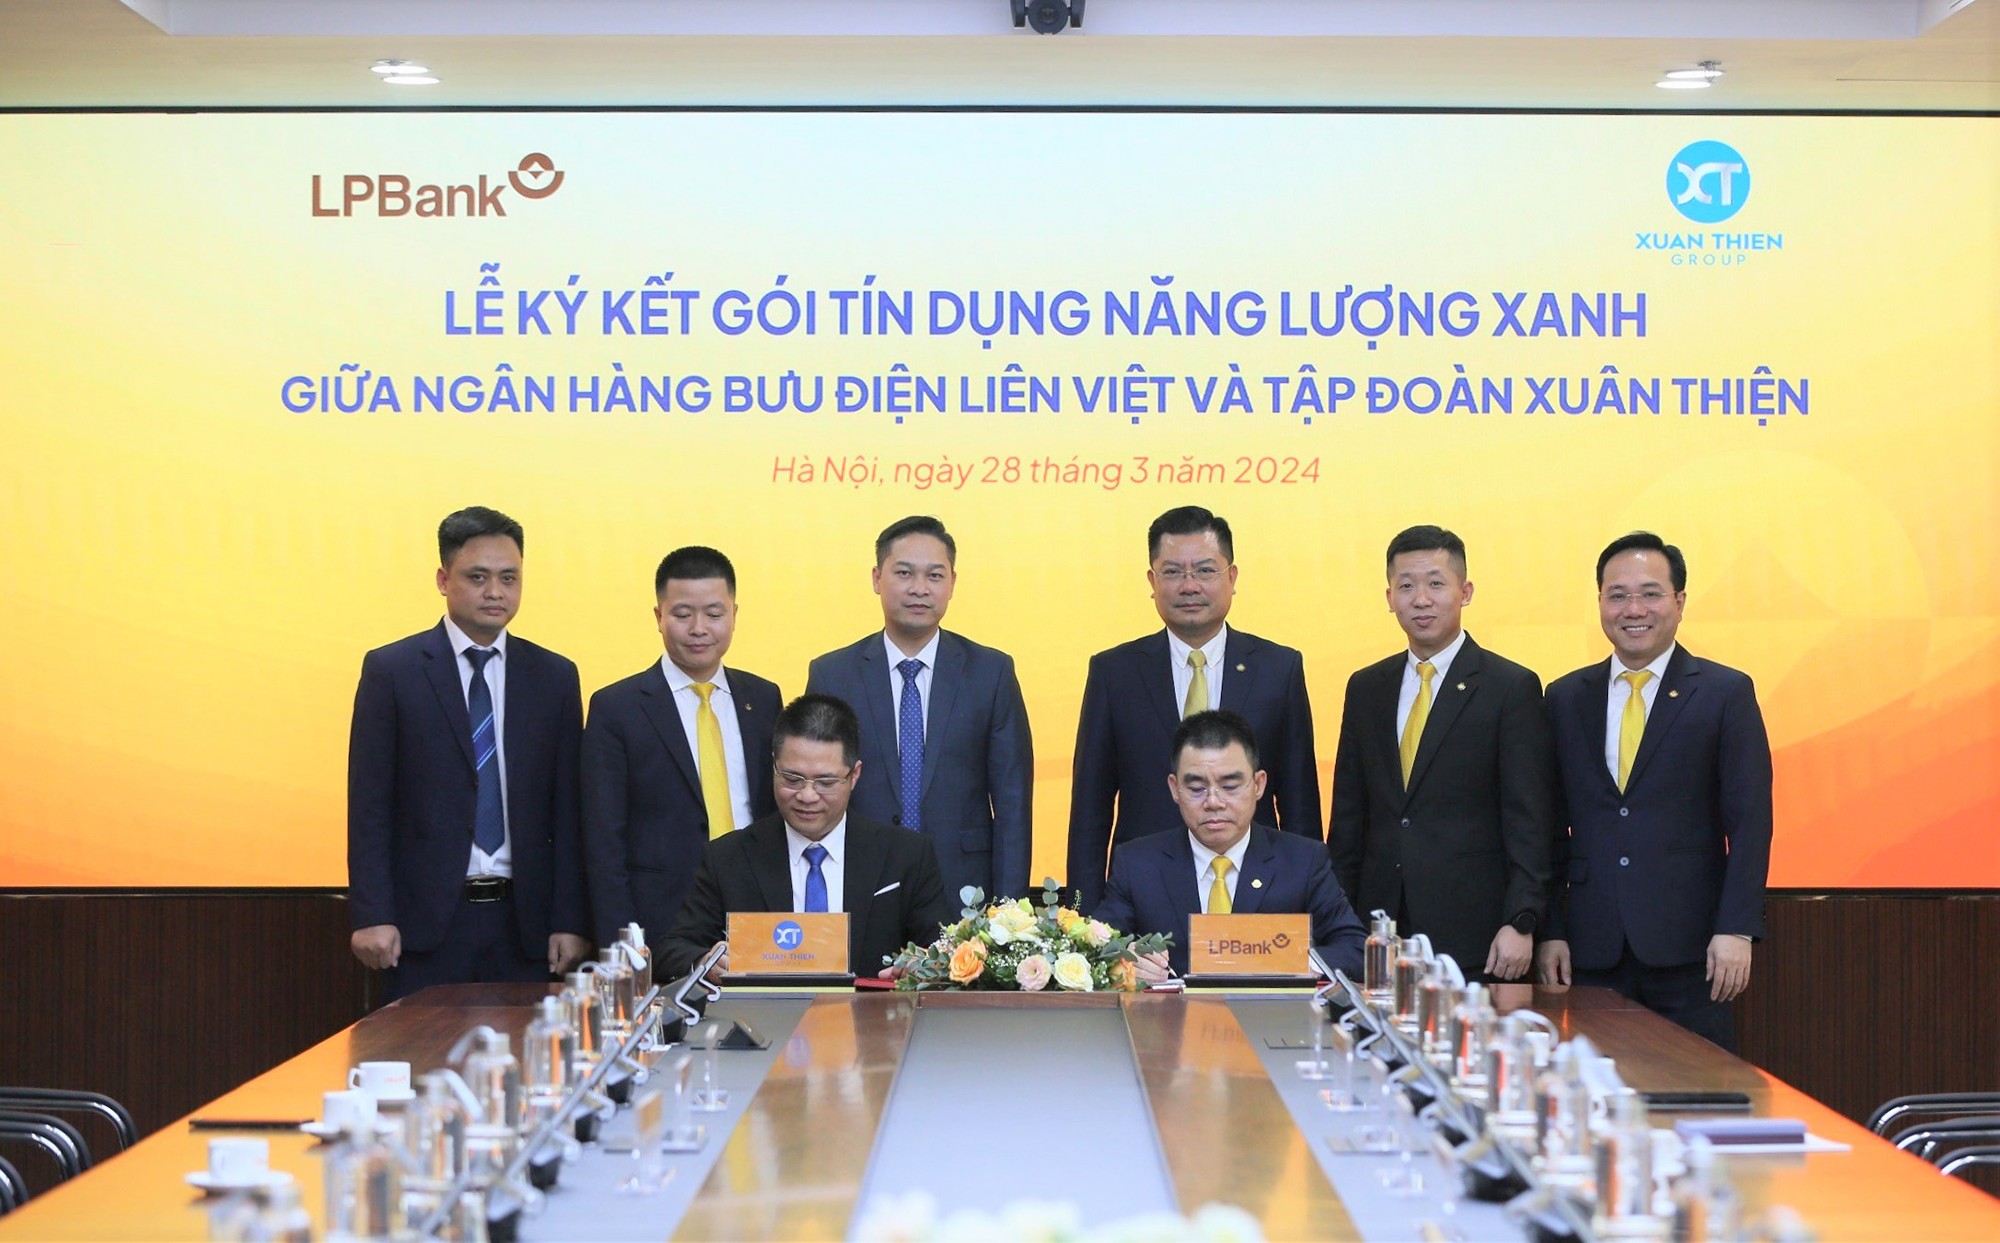 Ông Mai Xuân Hương, đại diện Tập đoàn Xuân Thiện (bên trái, hàng trước) và Ông Hồ Nam Tiến, Phó Chủ tịch HĐQT kiêm Tổng Giám đốc LPBank (bên phải, hàng trước), thực hiện nghi thức ký kết.